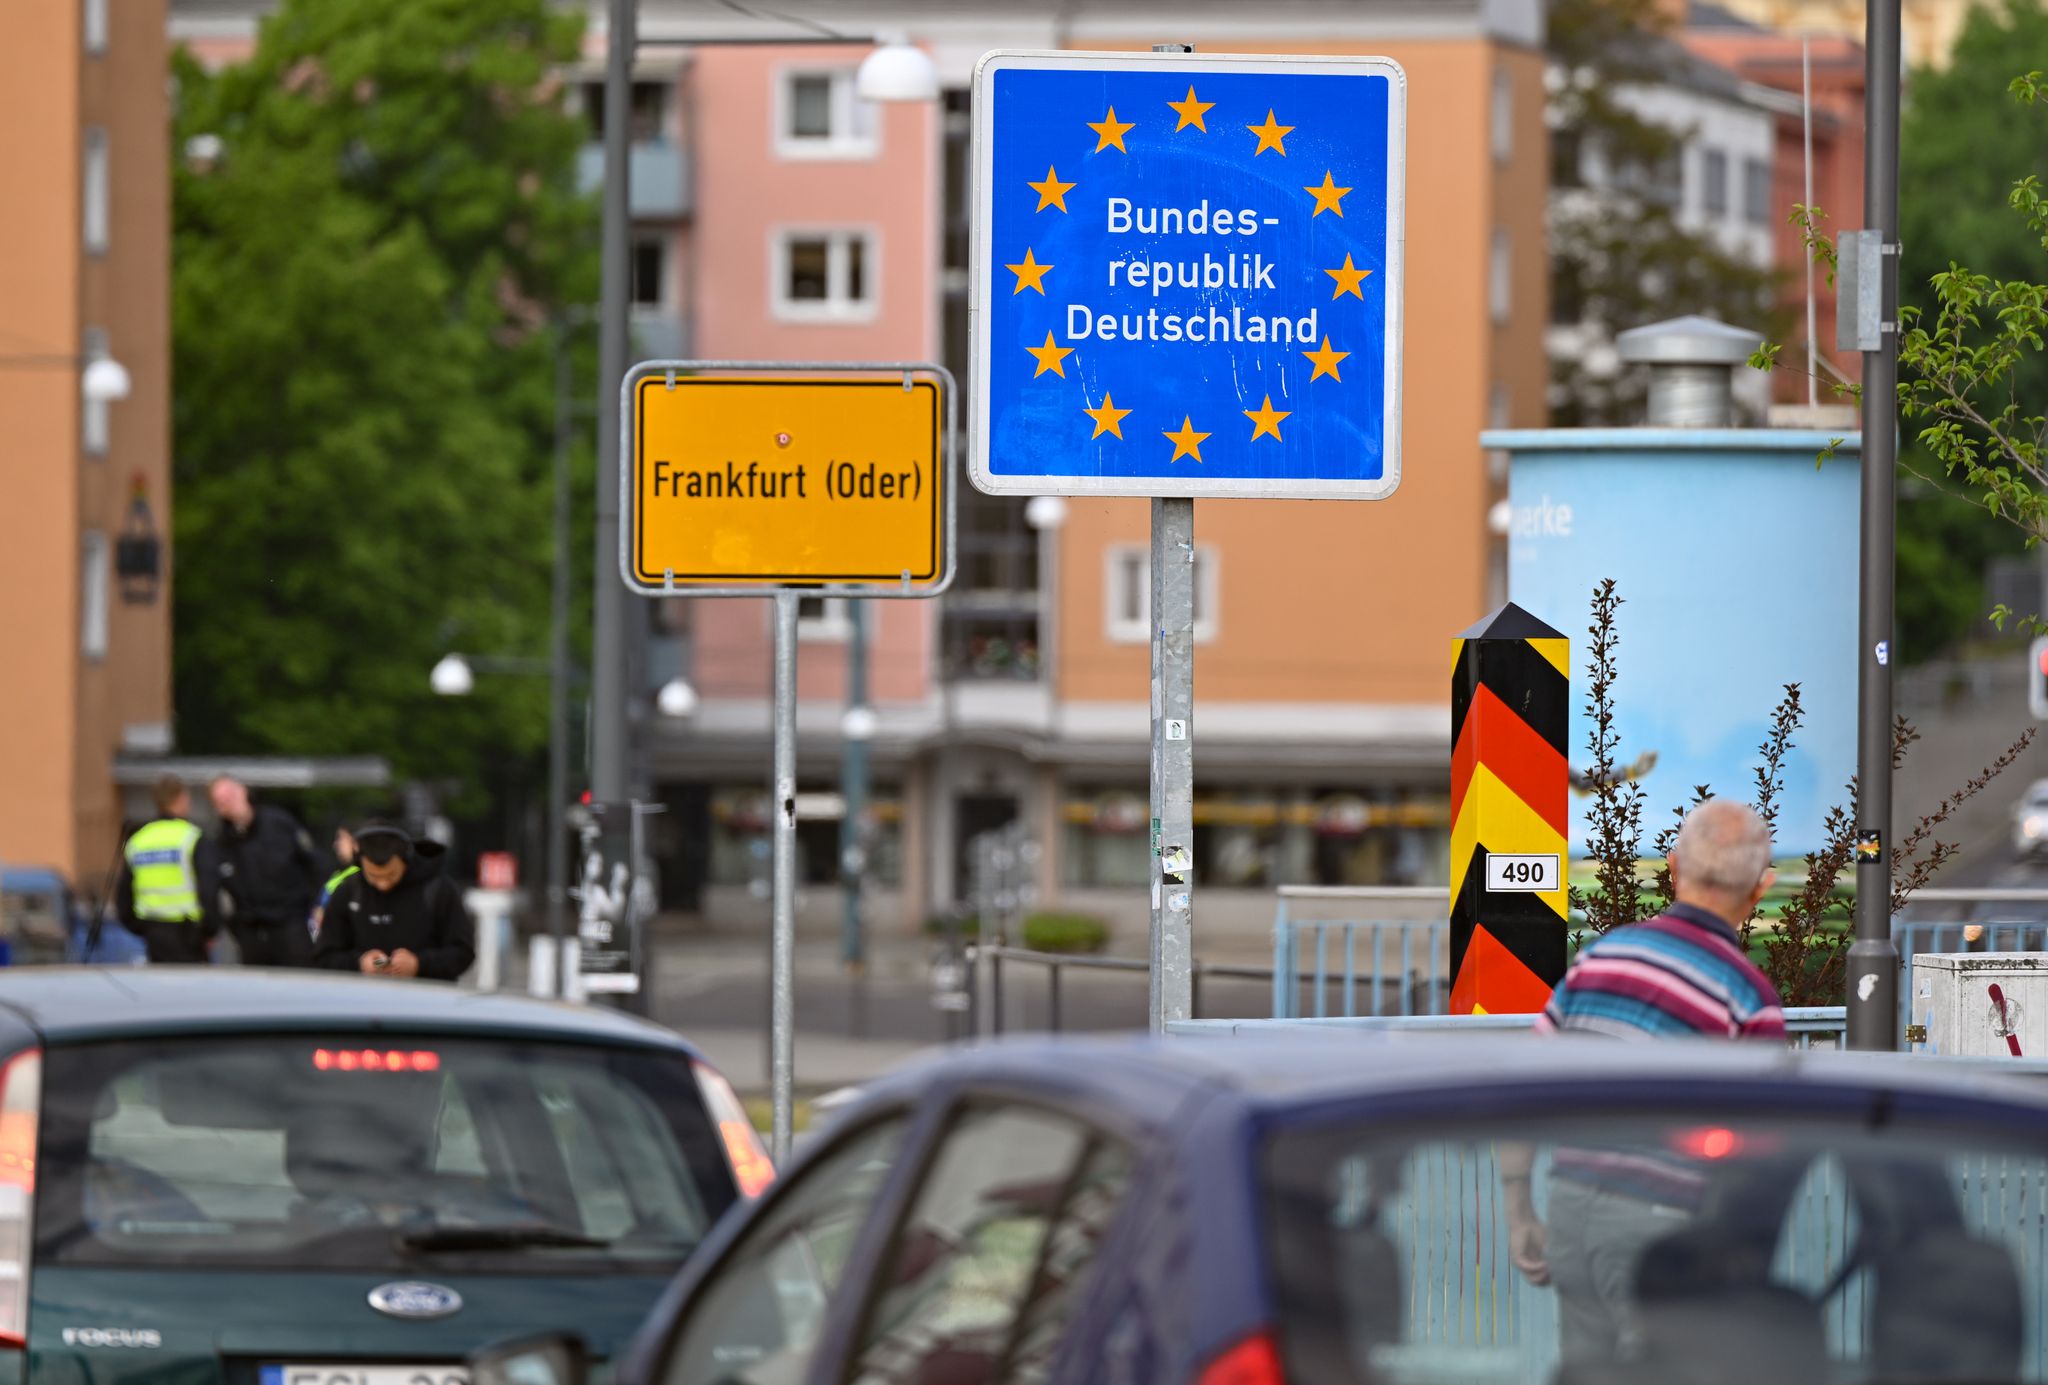 Der deutsch-polnische Grenzübergang in Frankfurt (Oder). Kommen hier stationäre Kontrollen der Bundespolizei?